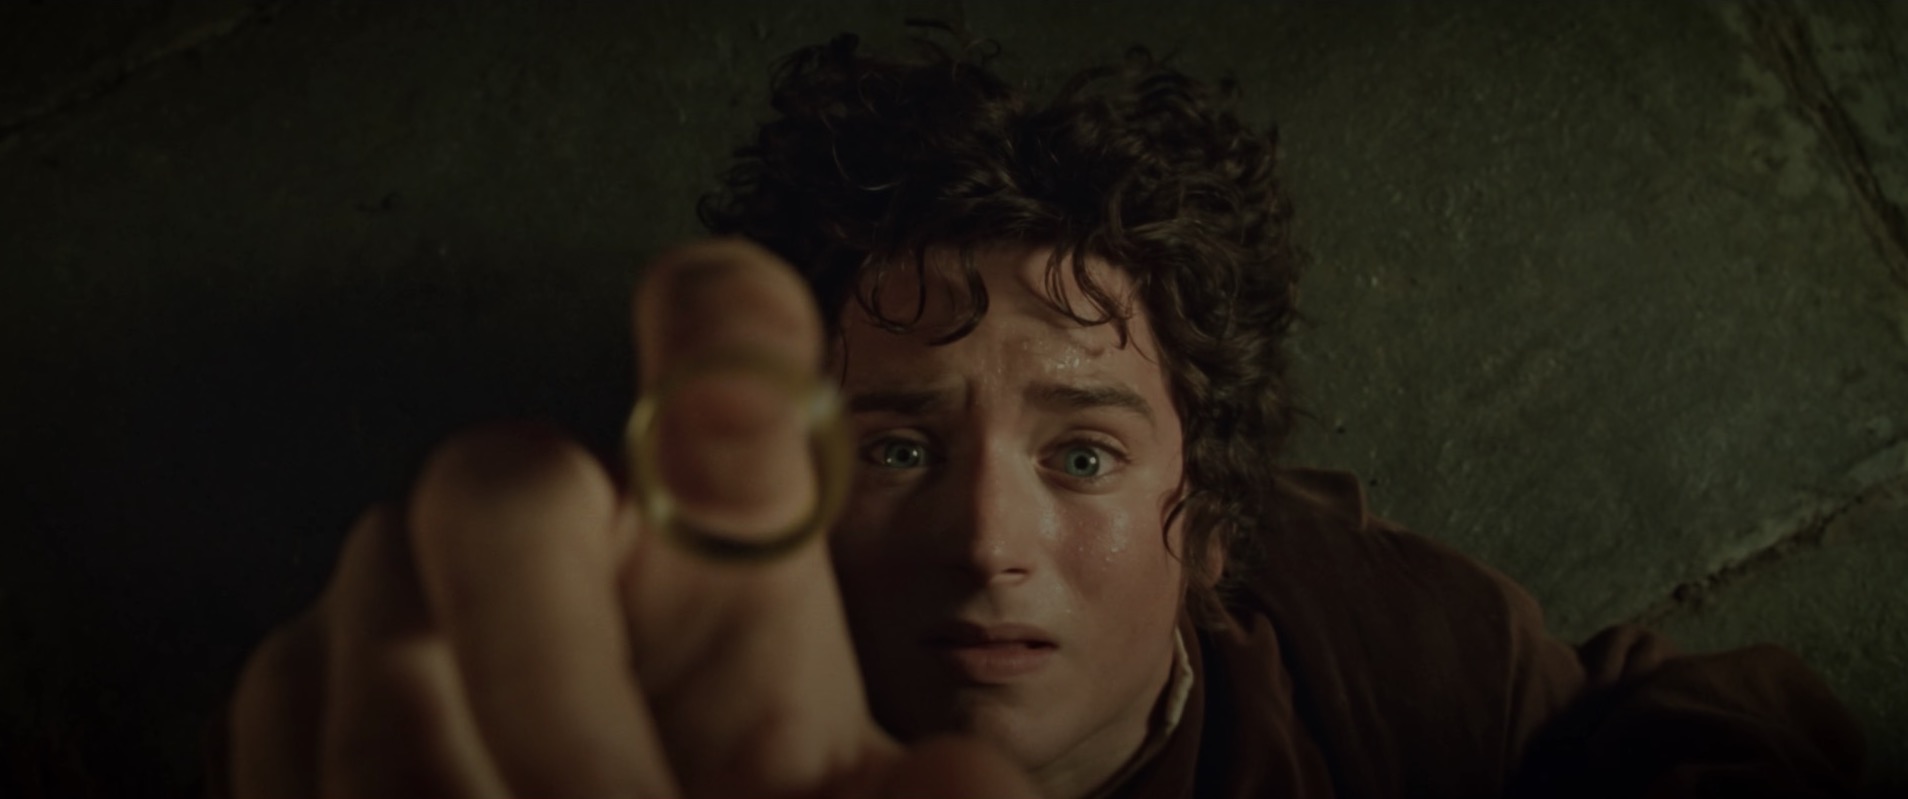 Le Seigneur des anneaux : Elijah Wood est sceptique sur les prochains films